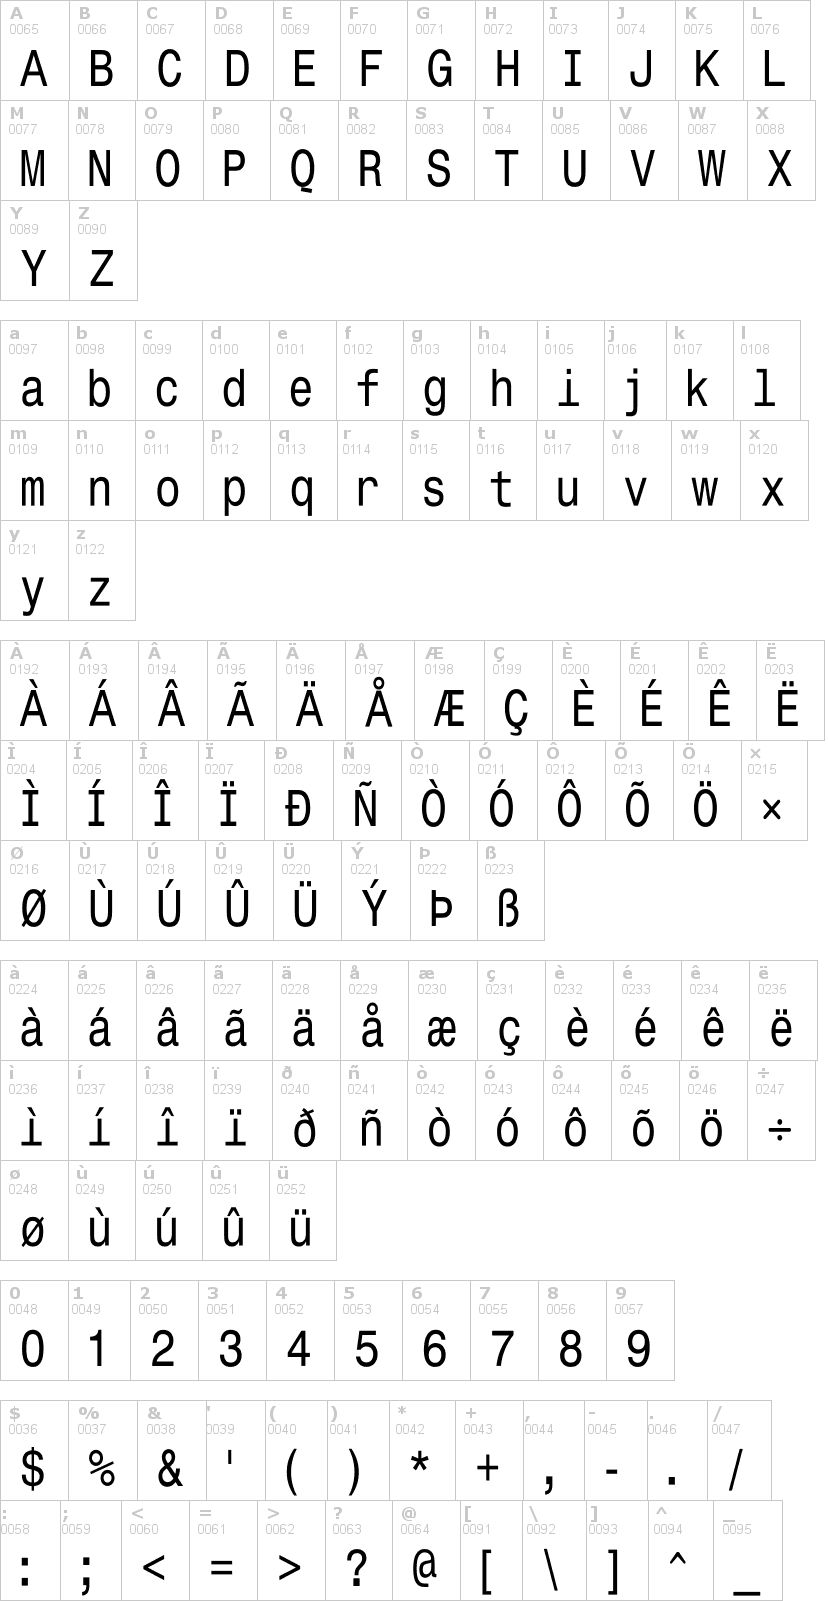 Lettere dell'alfabeto del font monospace-typewrite con le quali è possibile realizzare adesivi prespaziati